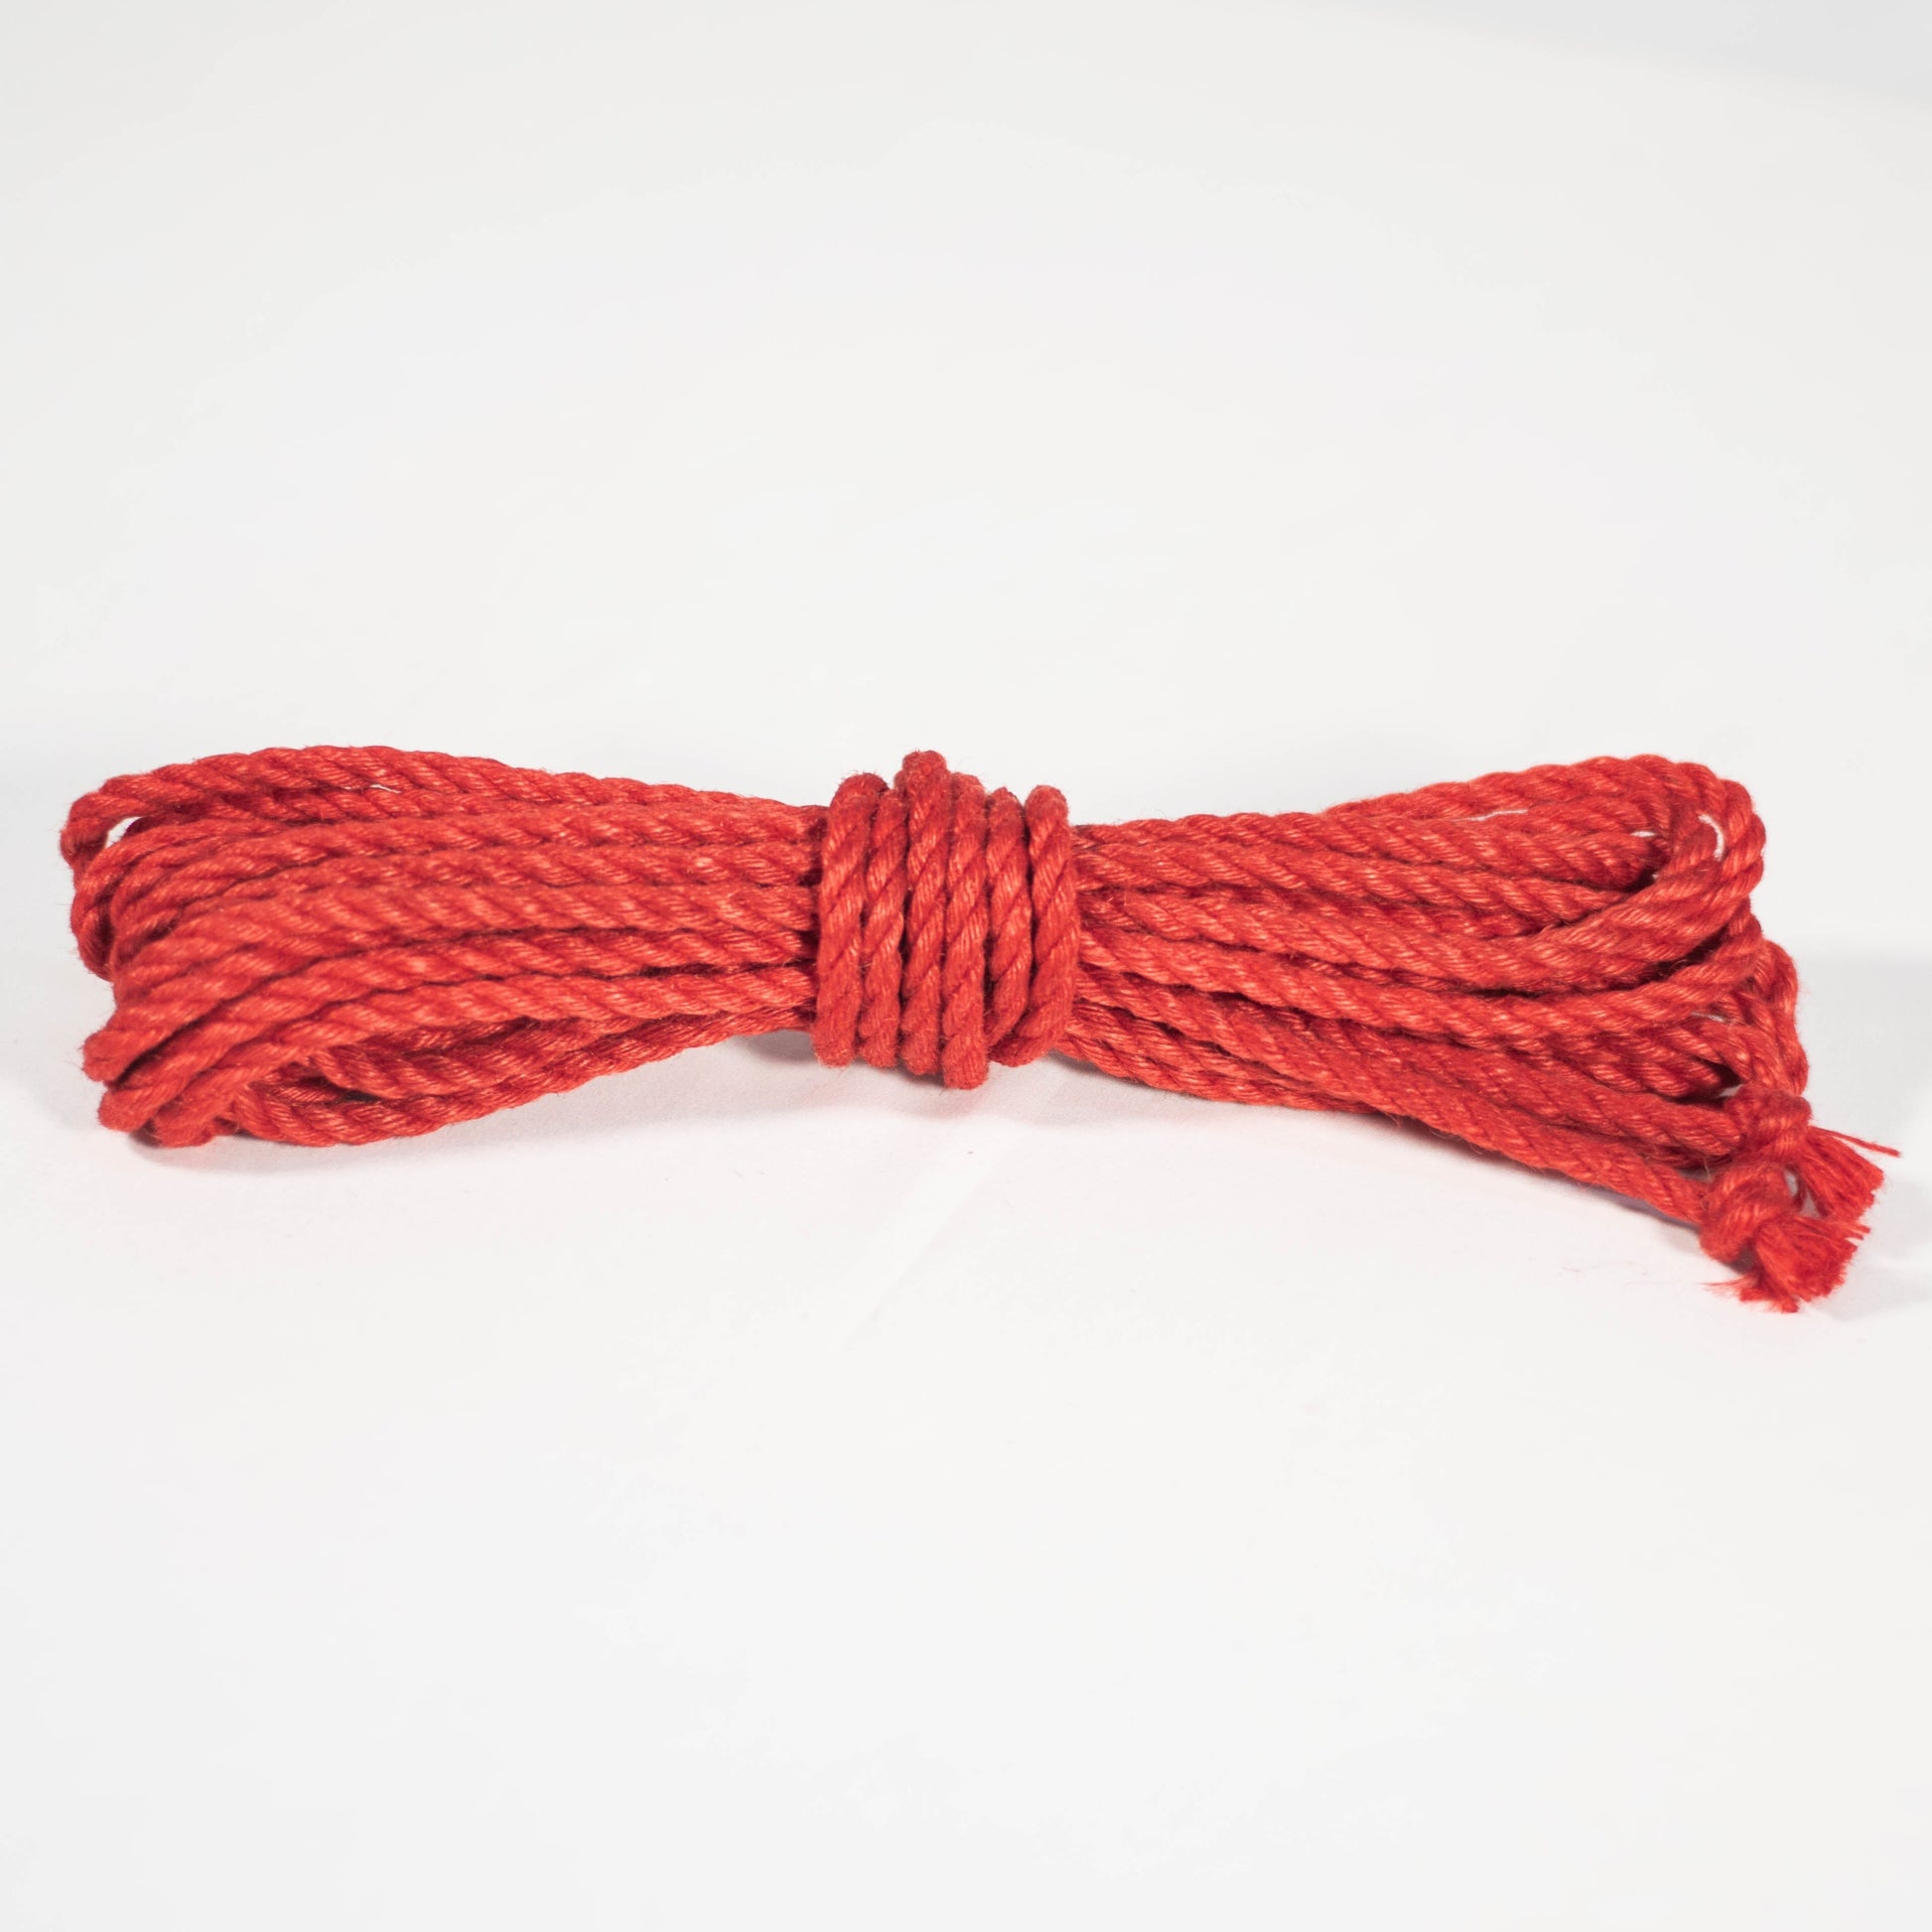 Treated Rope - 6mm Anatomie Red Jute Rope Shibari Rope 